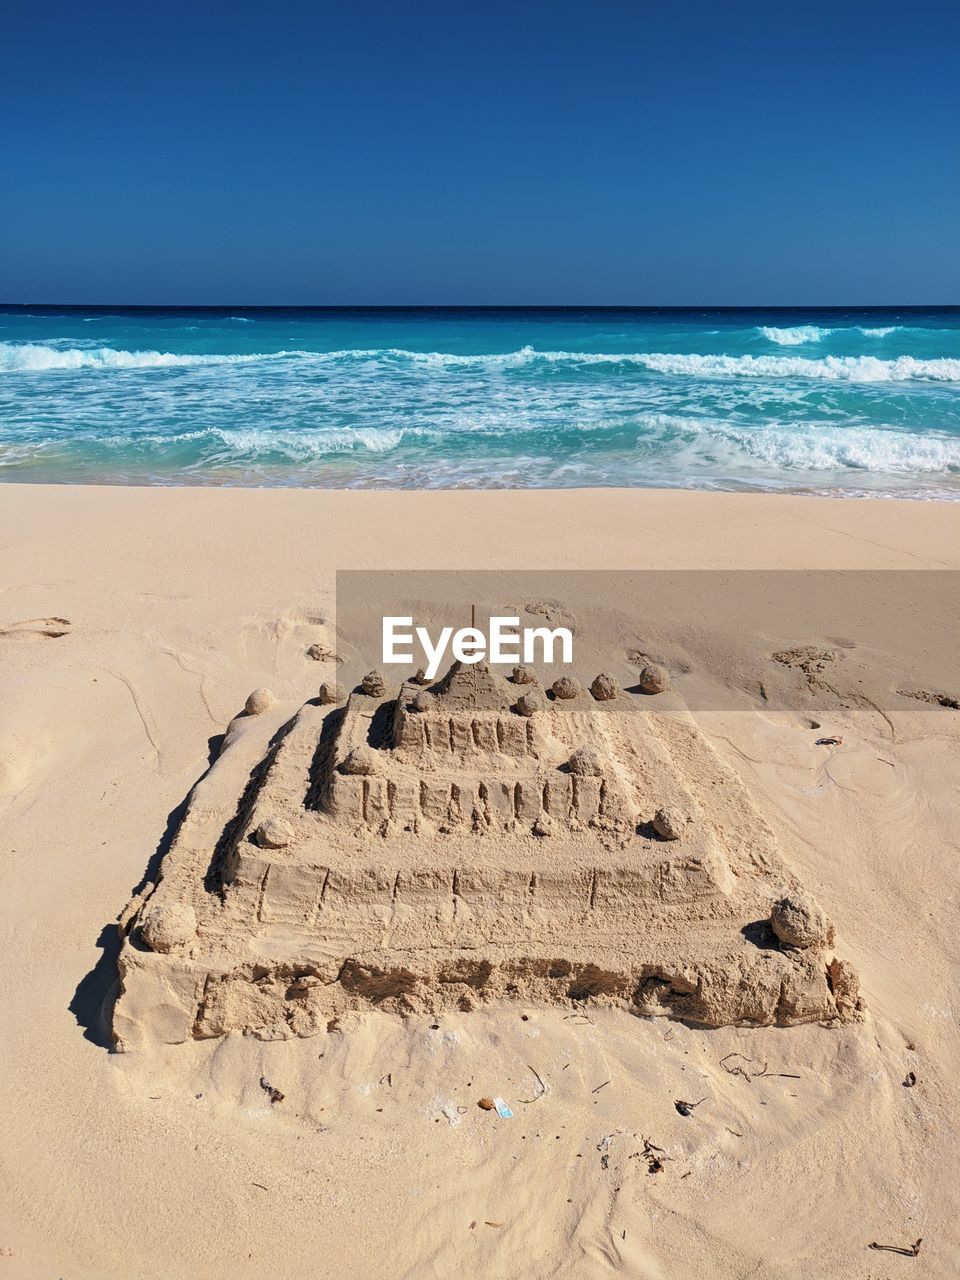 Sand castle at beach against clear sky